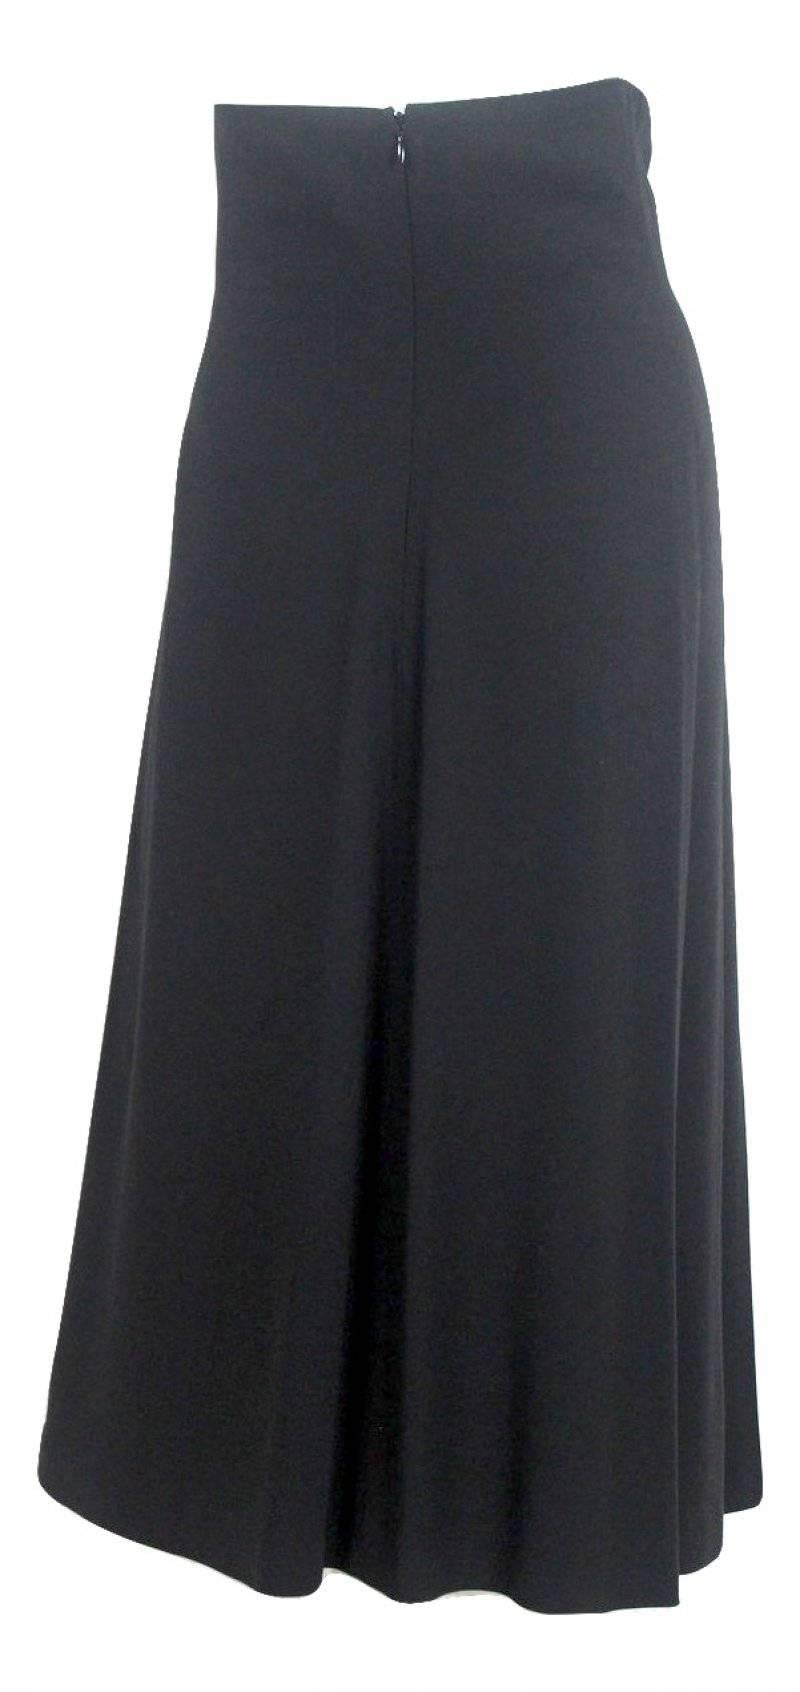 Black Alexander McQueen 1990's High Waisted Skirt